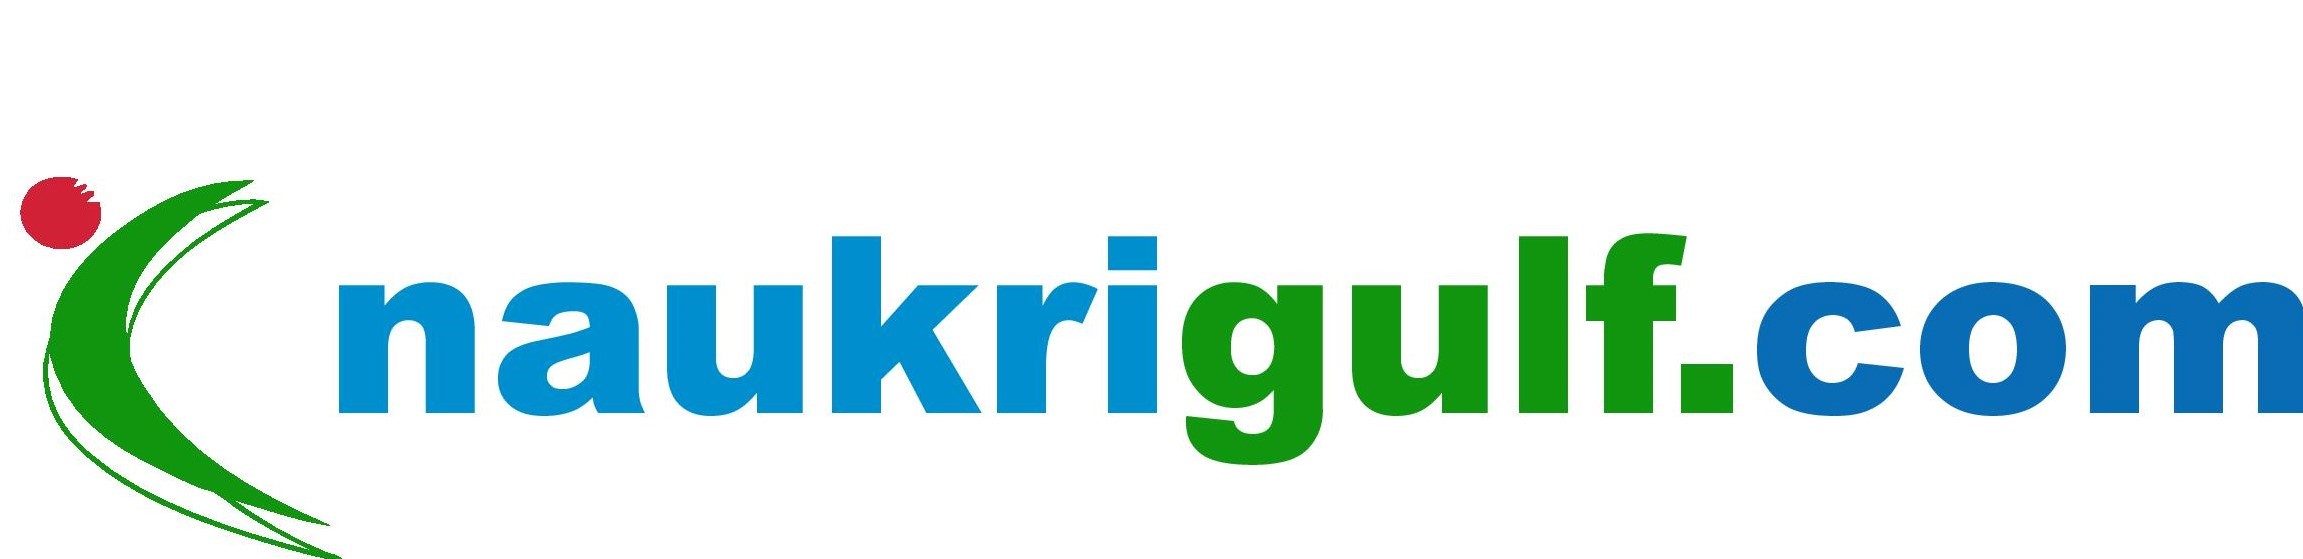 naukrigulf.com logo